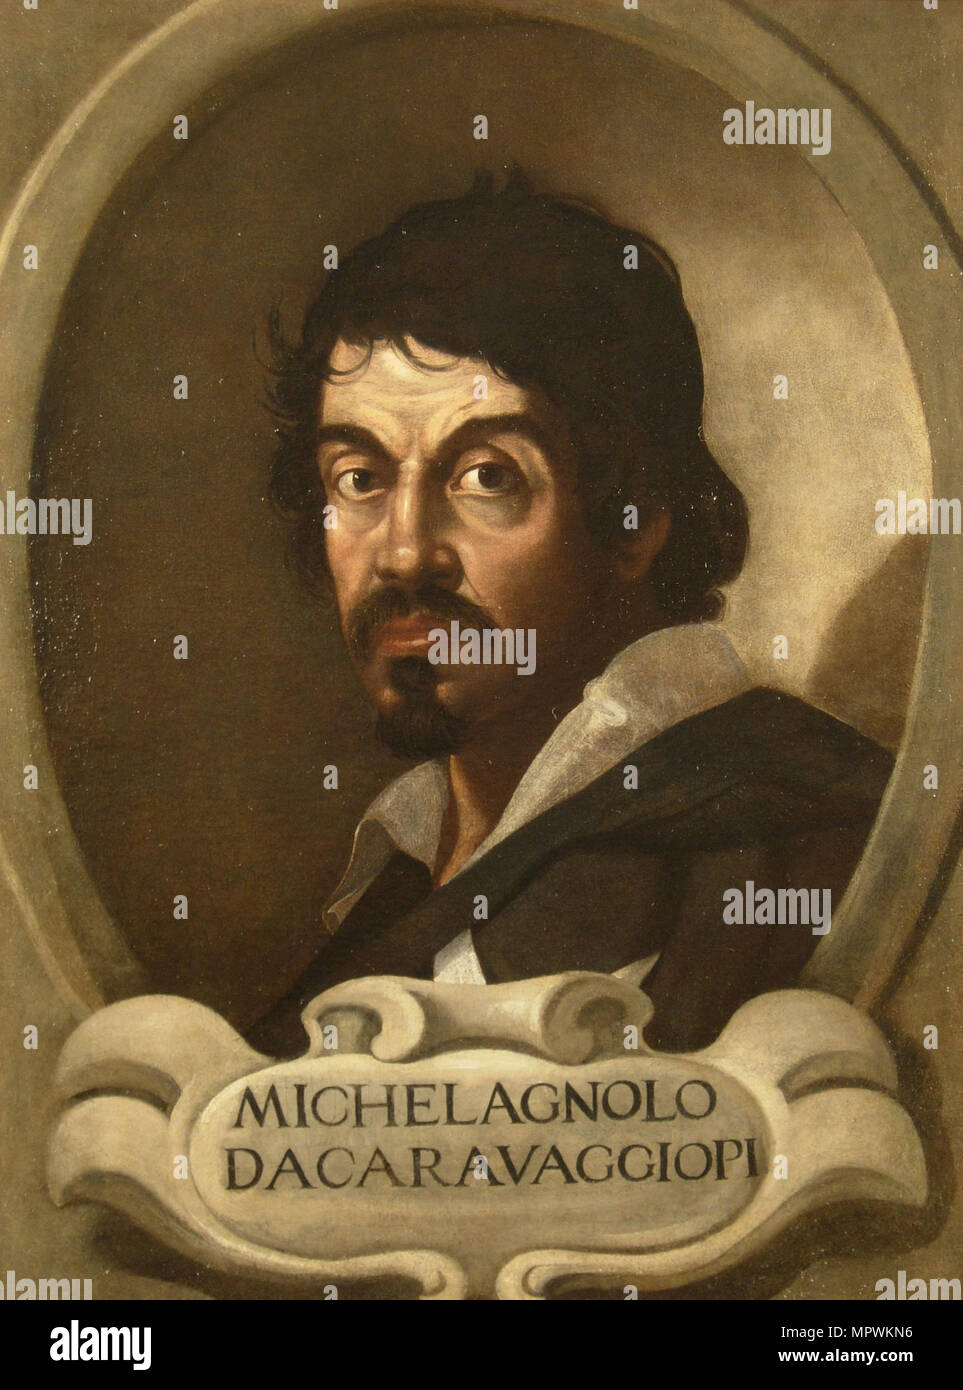 Portrait of Michelangelo Merisi da Caravaggio, 17th century. Stock Photo